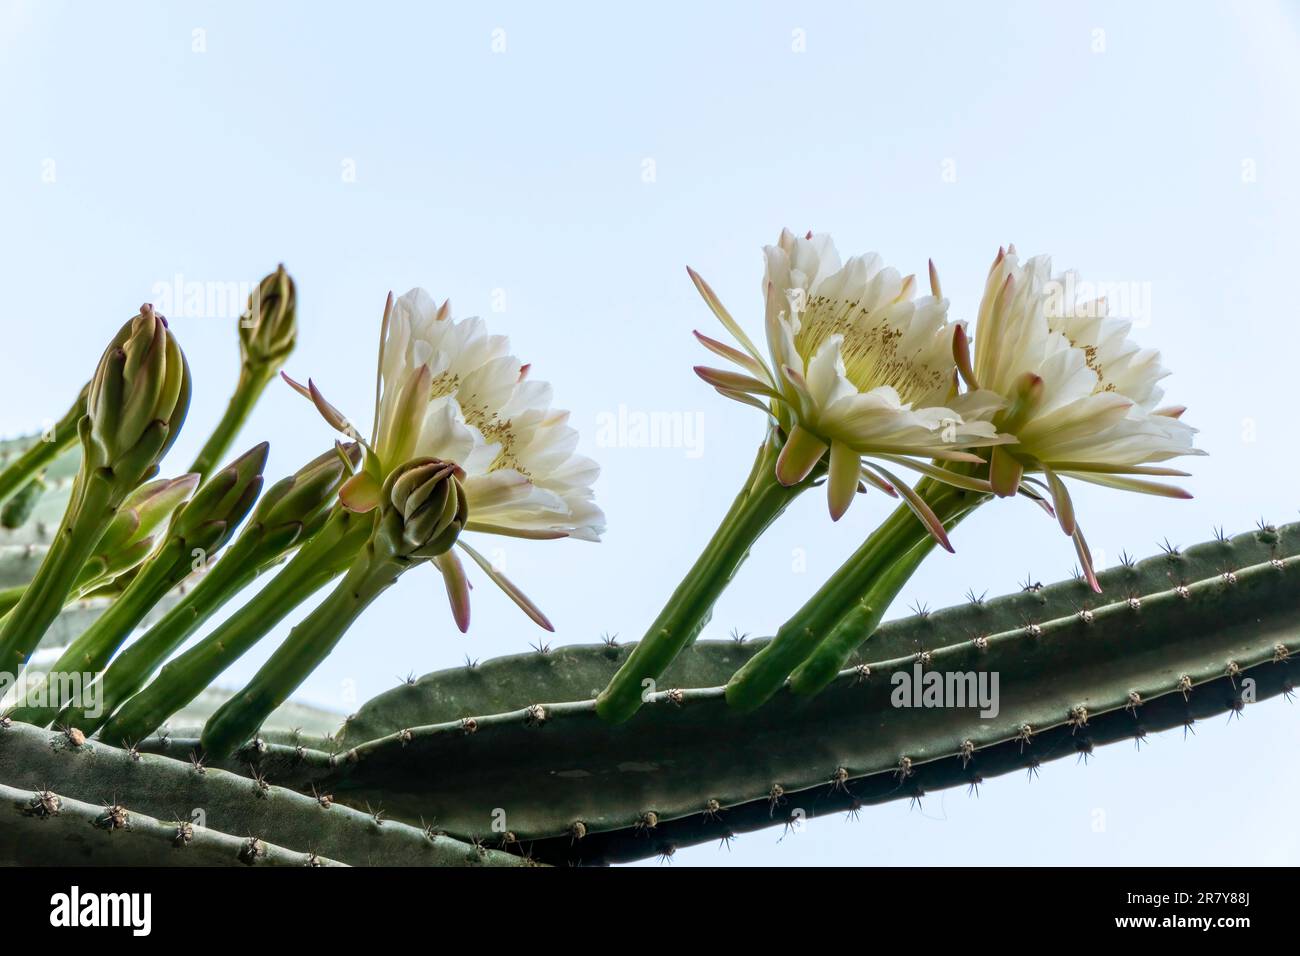 Peruvian apple cactus or Hedge cactus or Cereus hildmannianus in full bloom close up. Israel Stock Photo